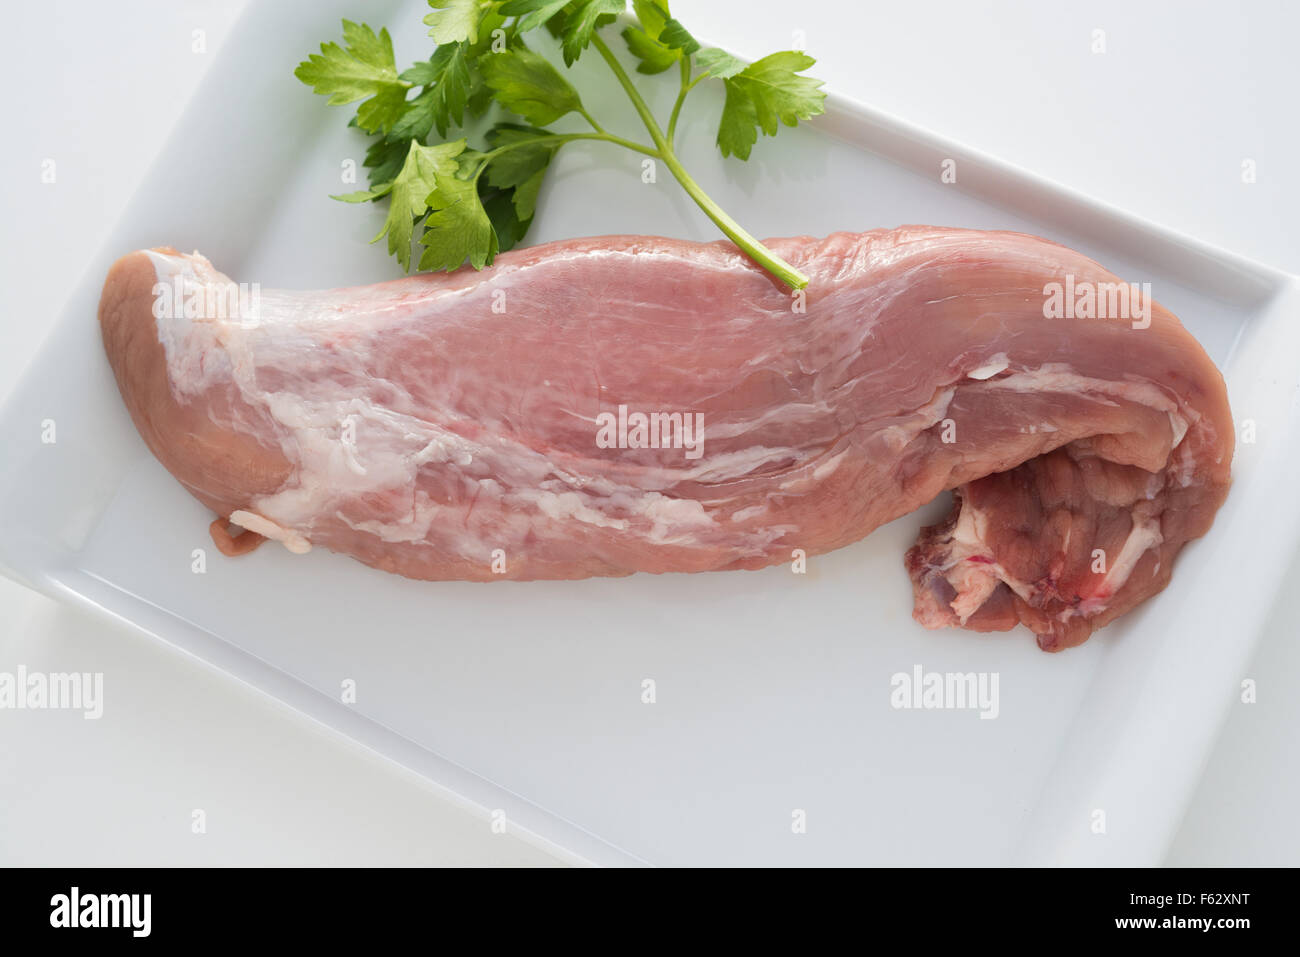 rohes Schweinefleisch Filet auf einem weißen Teller und mit Petersilie garniert Stockfoto